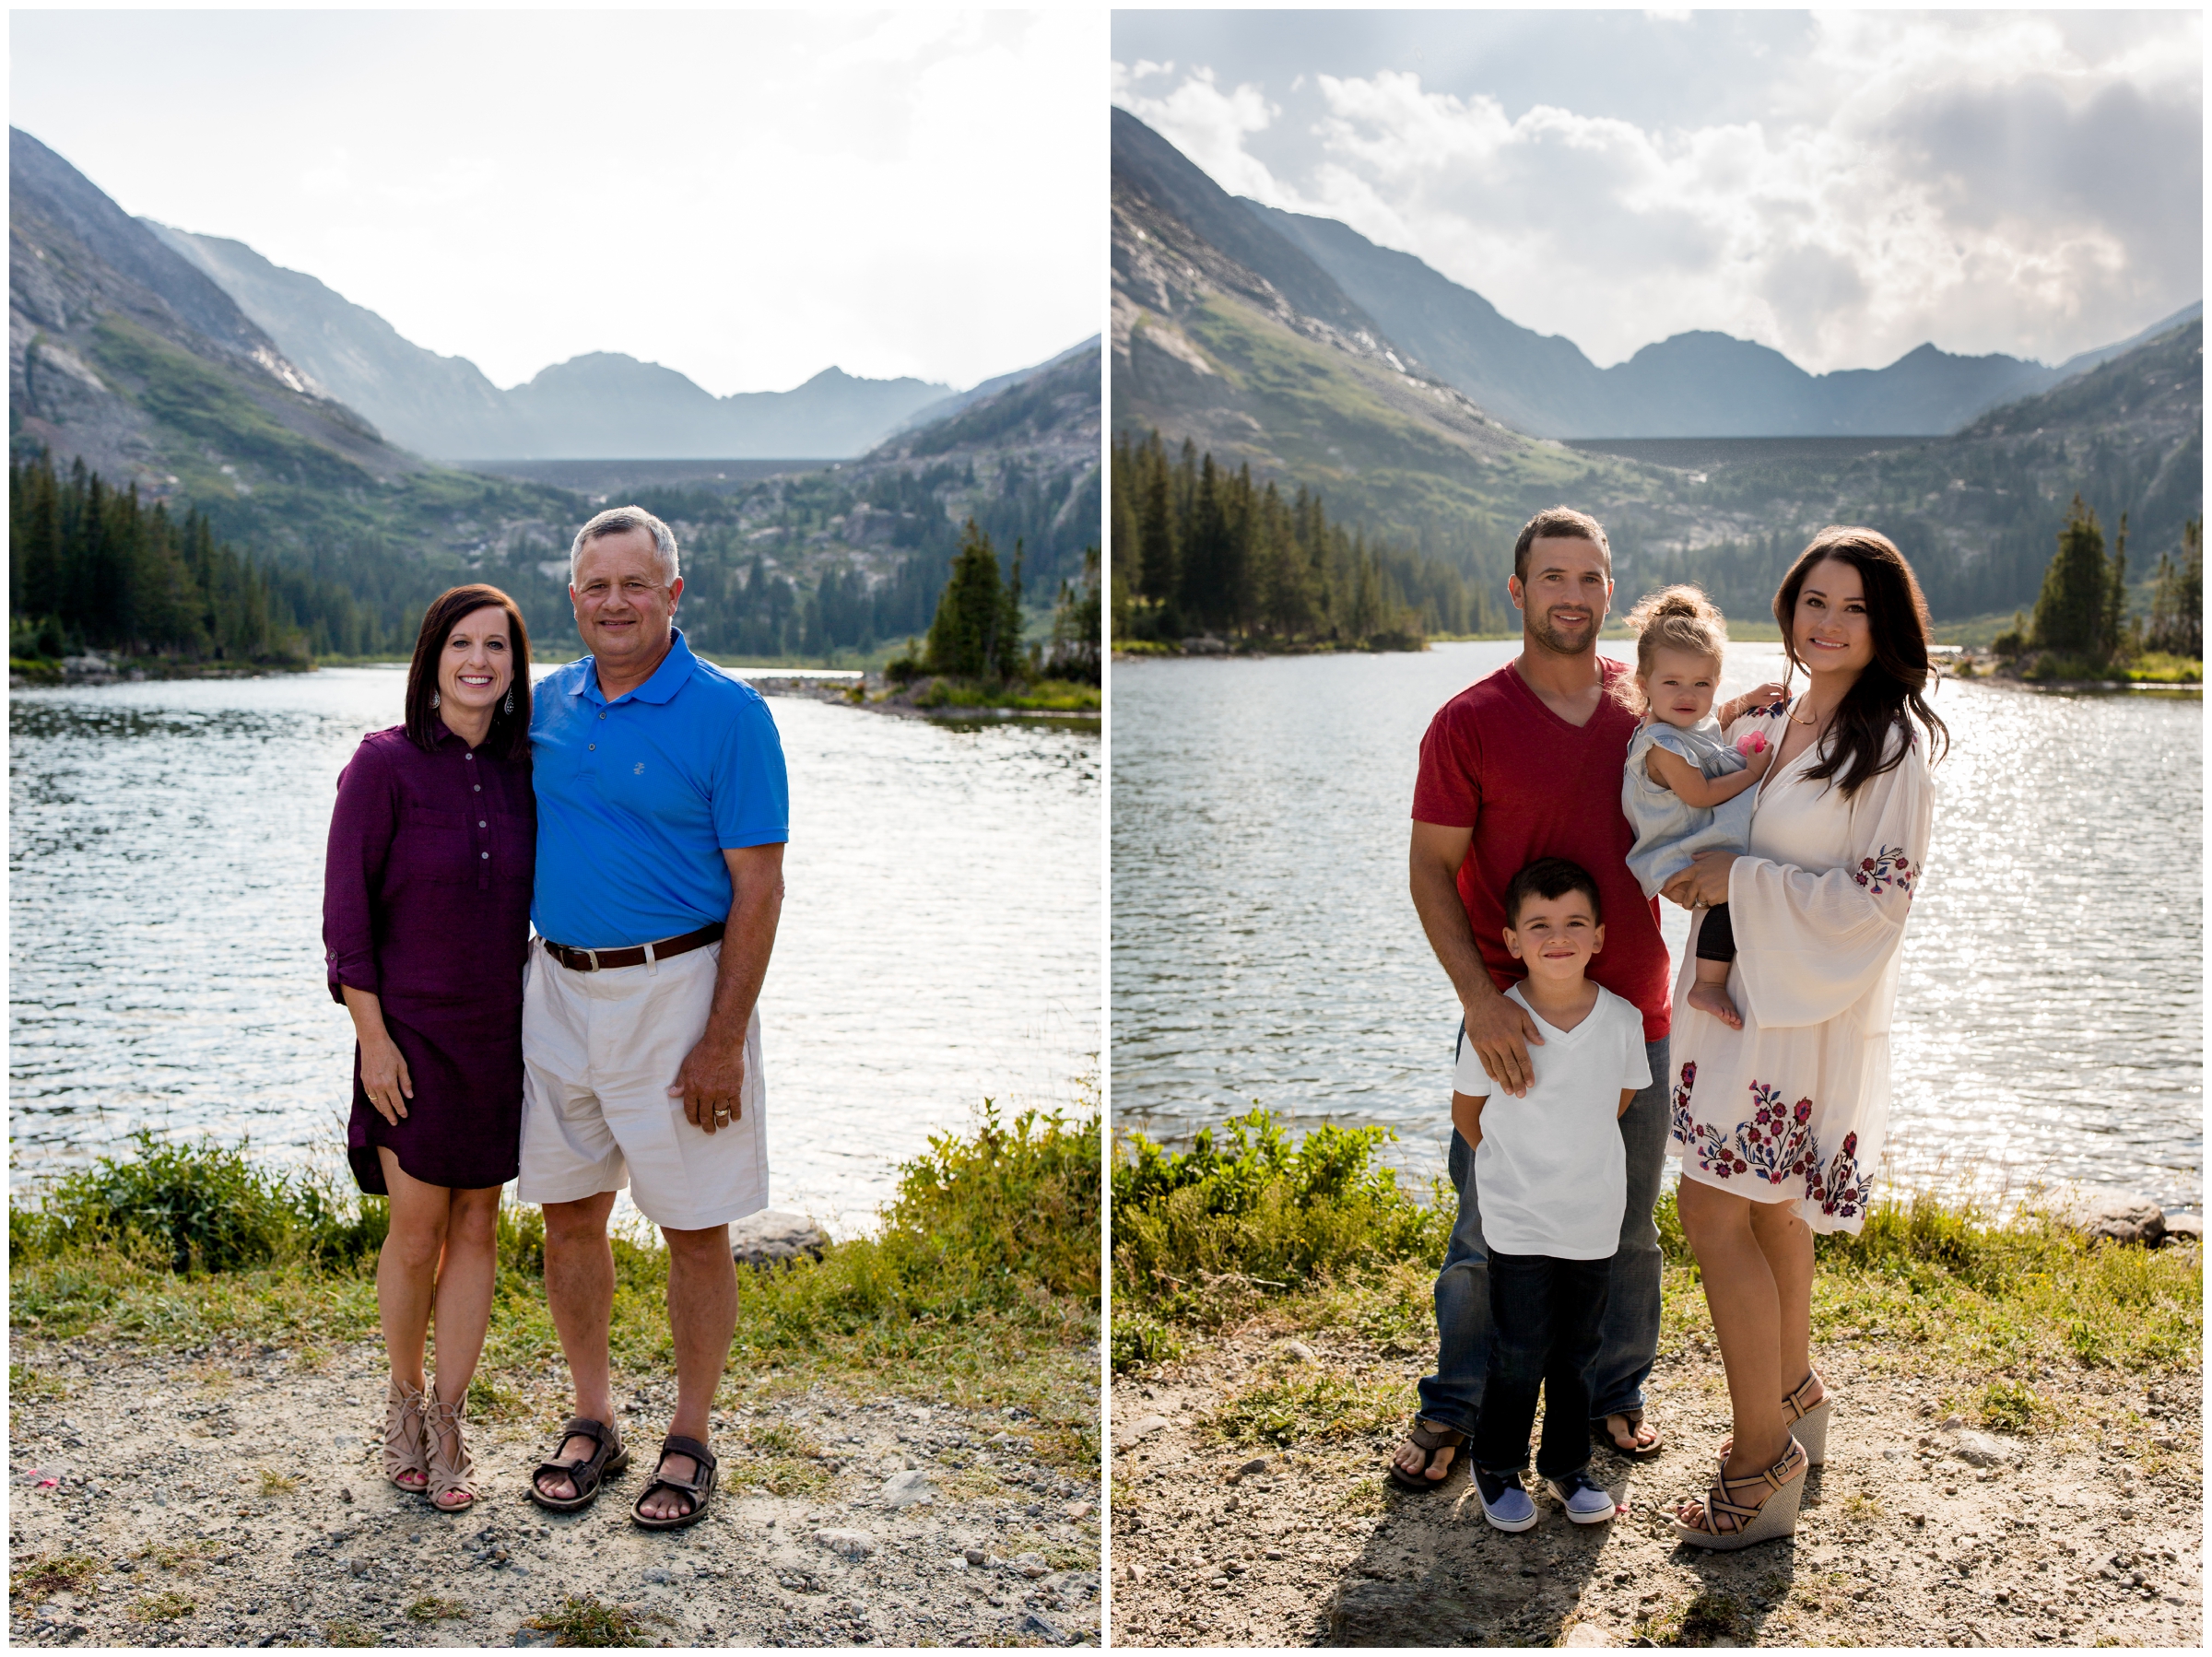 Colorado summer family portraits at Monte Cristo Gulch by Breckenridge photographer Plum Pretty Photo 